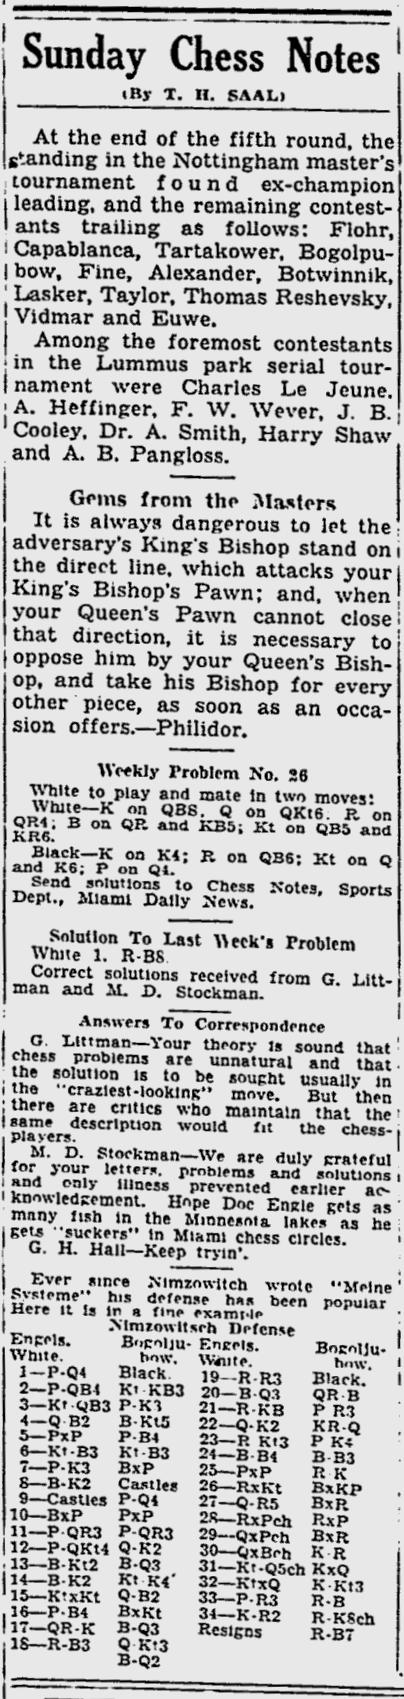 1936.08.23-01 Miami Daily News.jpg